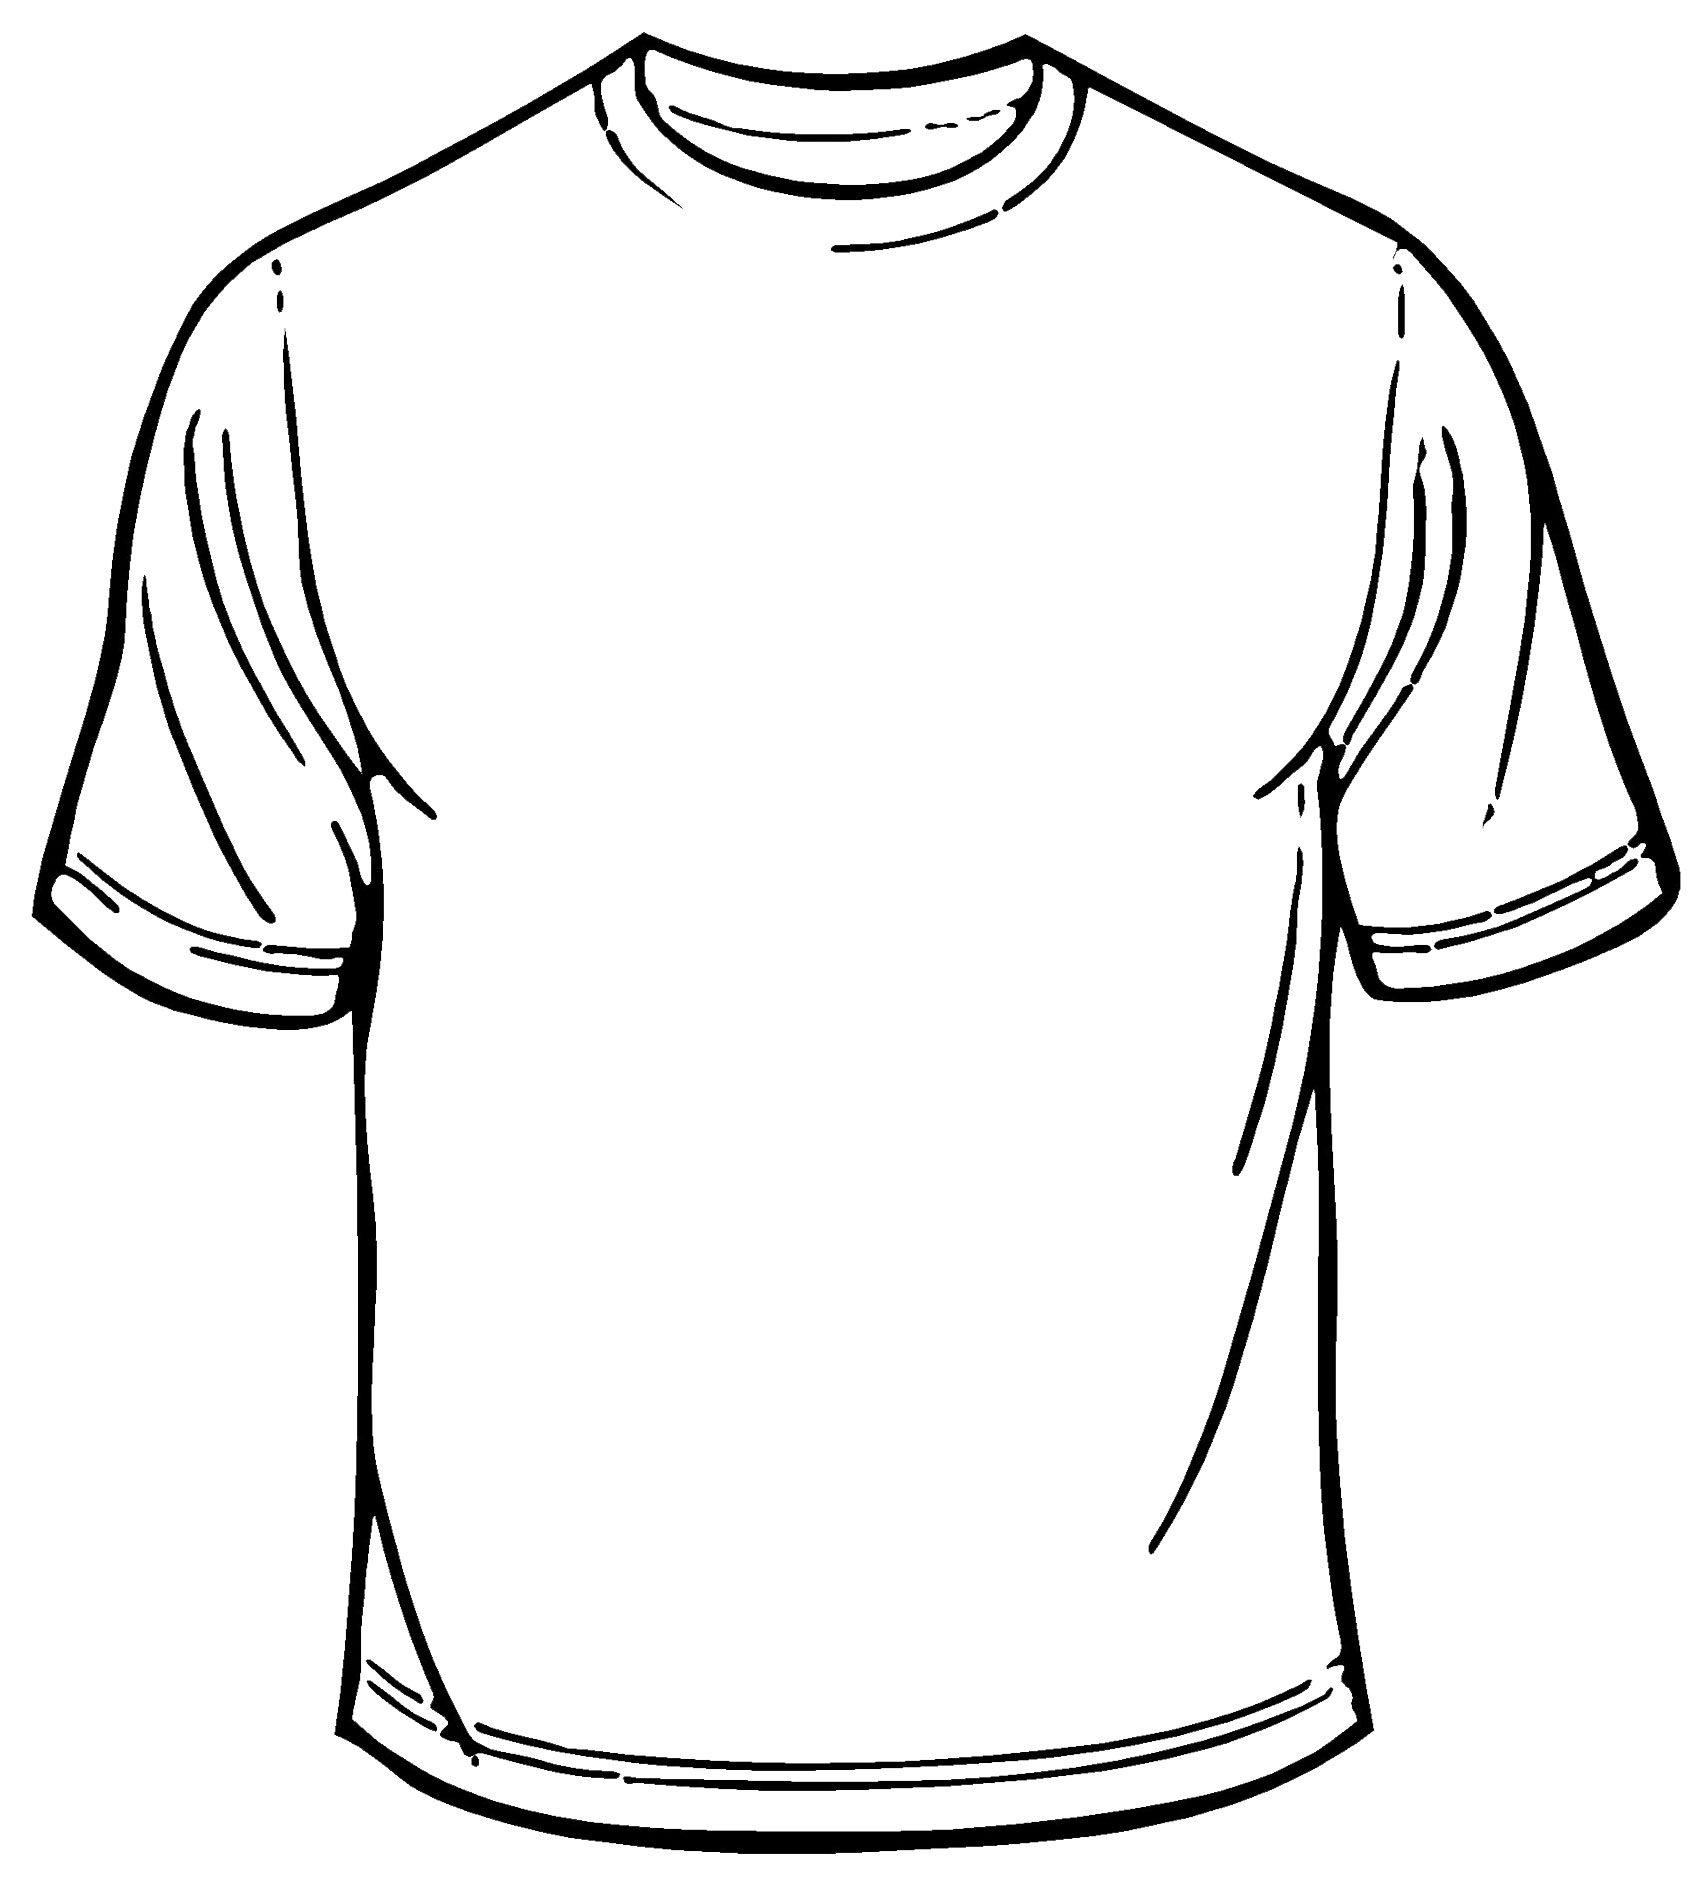 Best Photos of Blank Shirt Template - Blank T-Shirt Design ...